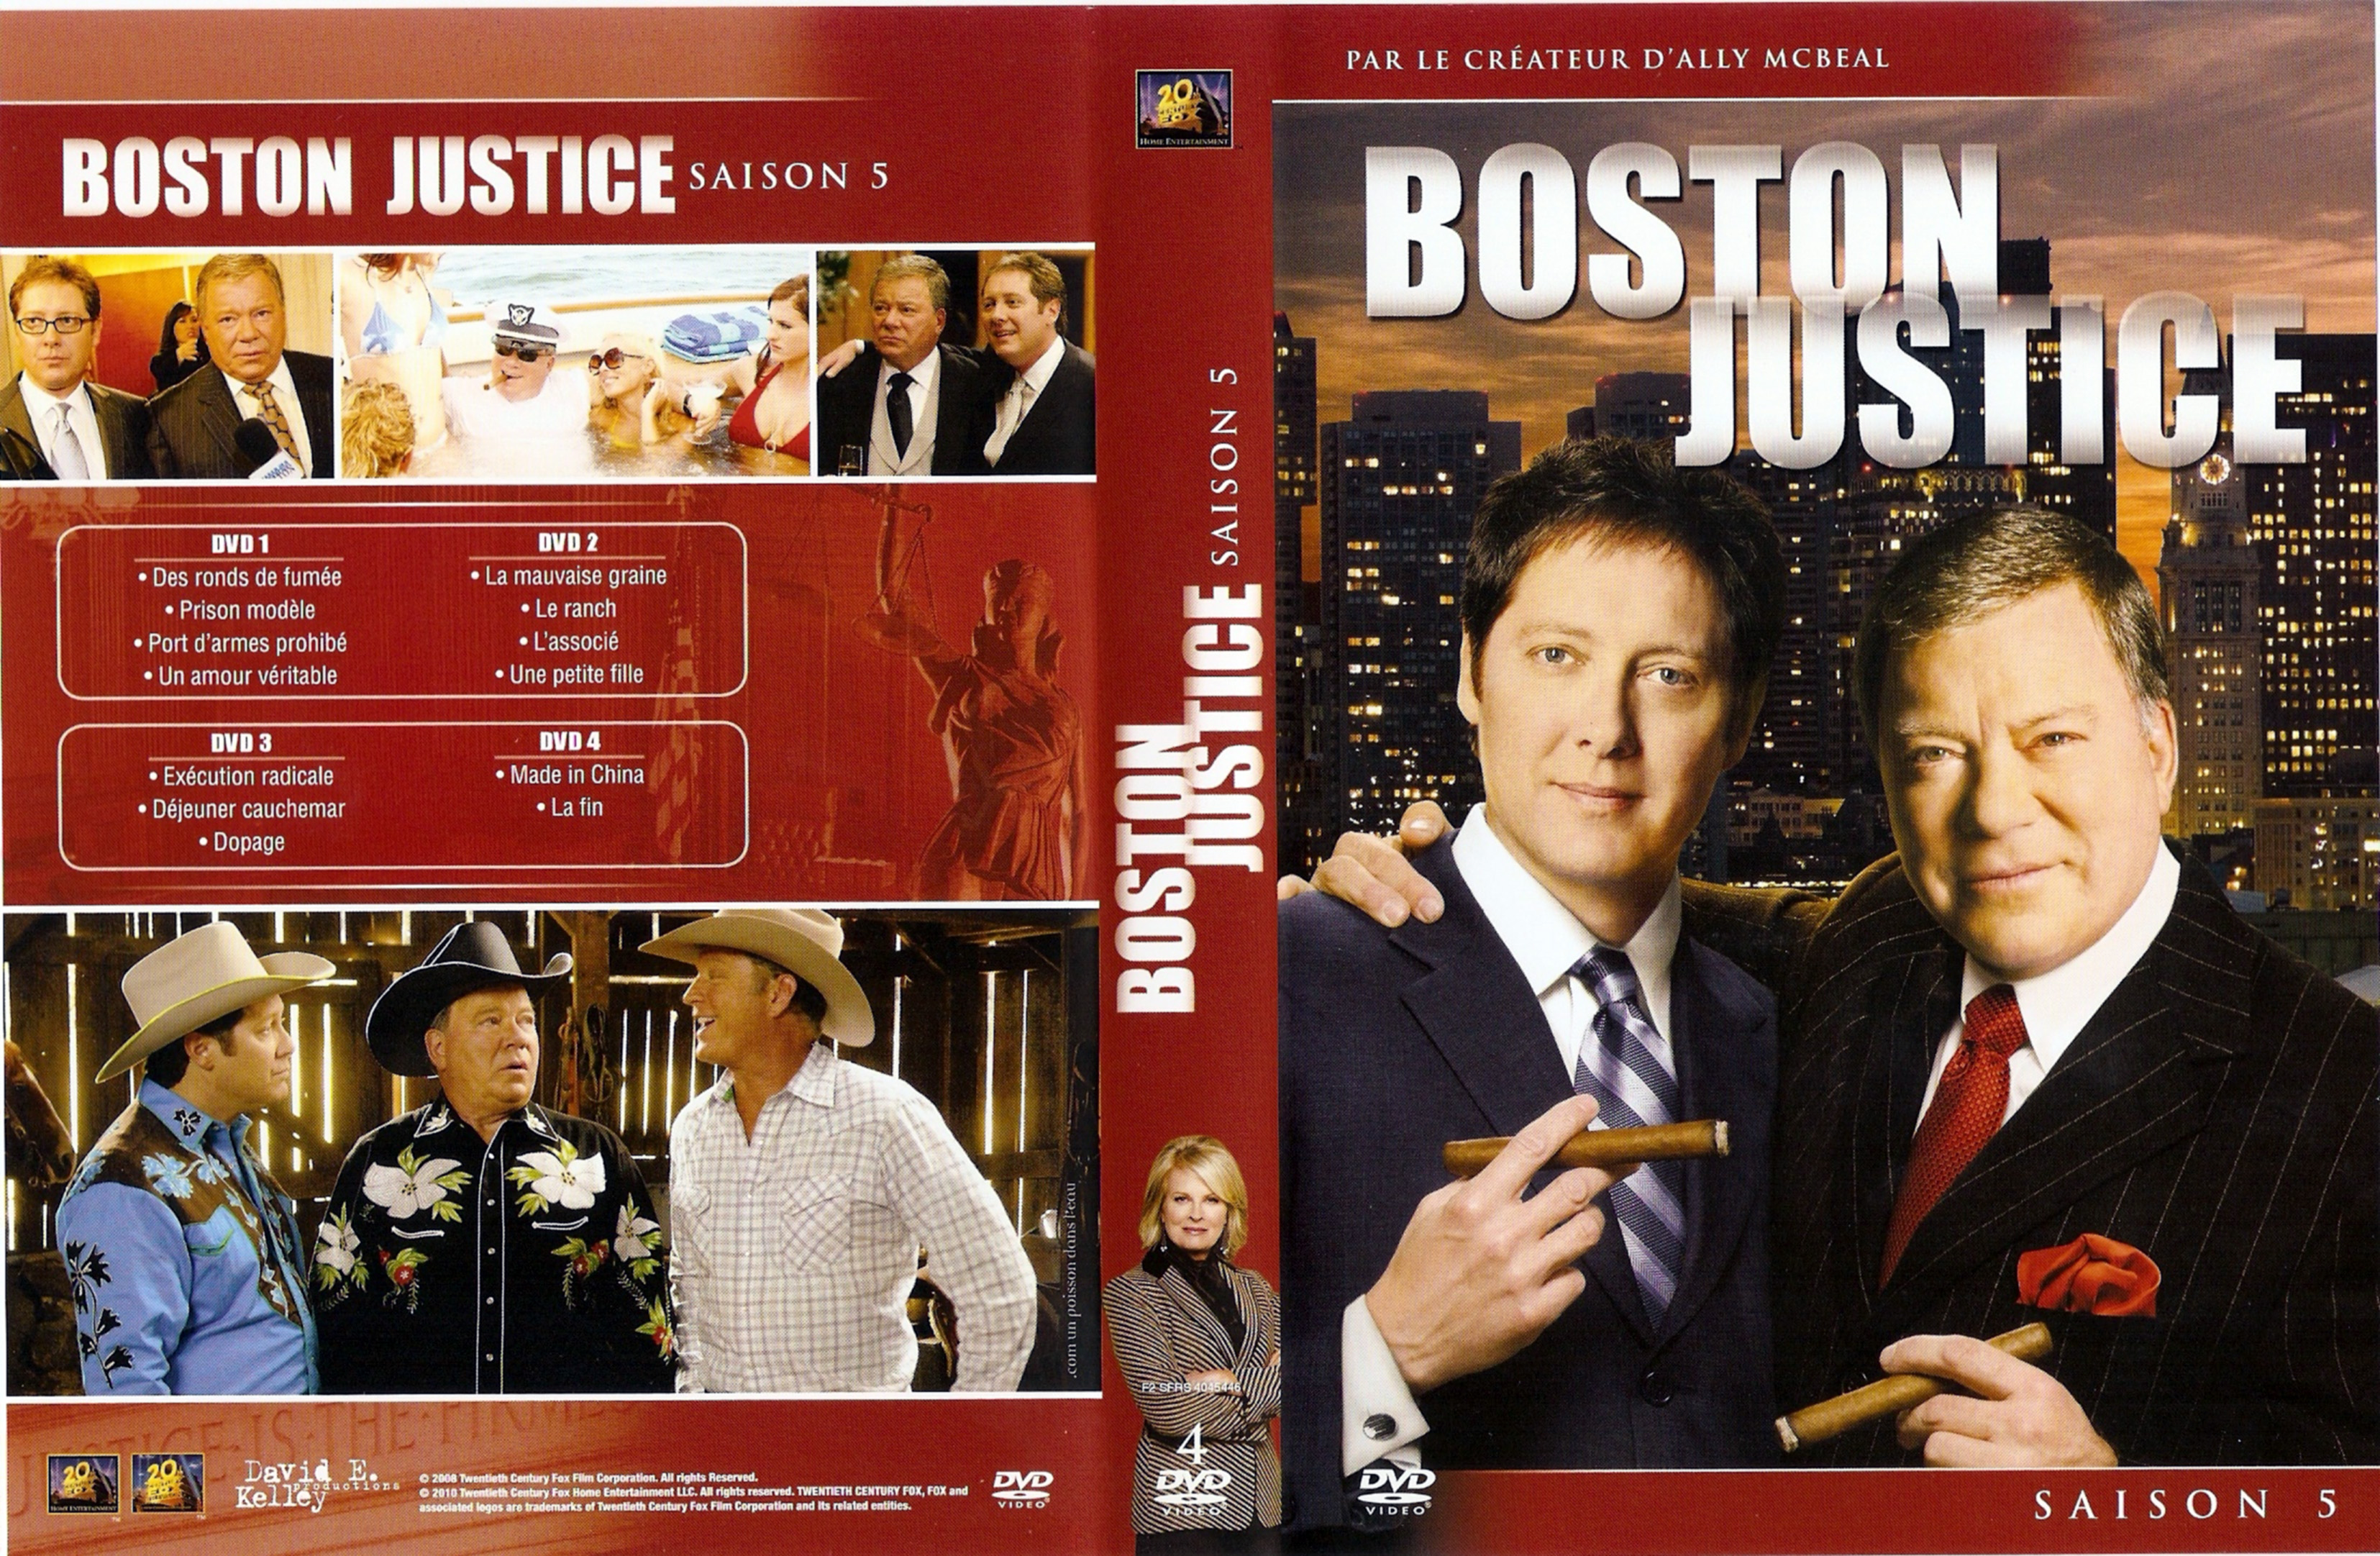 Jaquette DVD Boston justice Saison 5 COFFRET